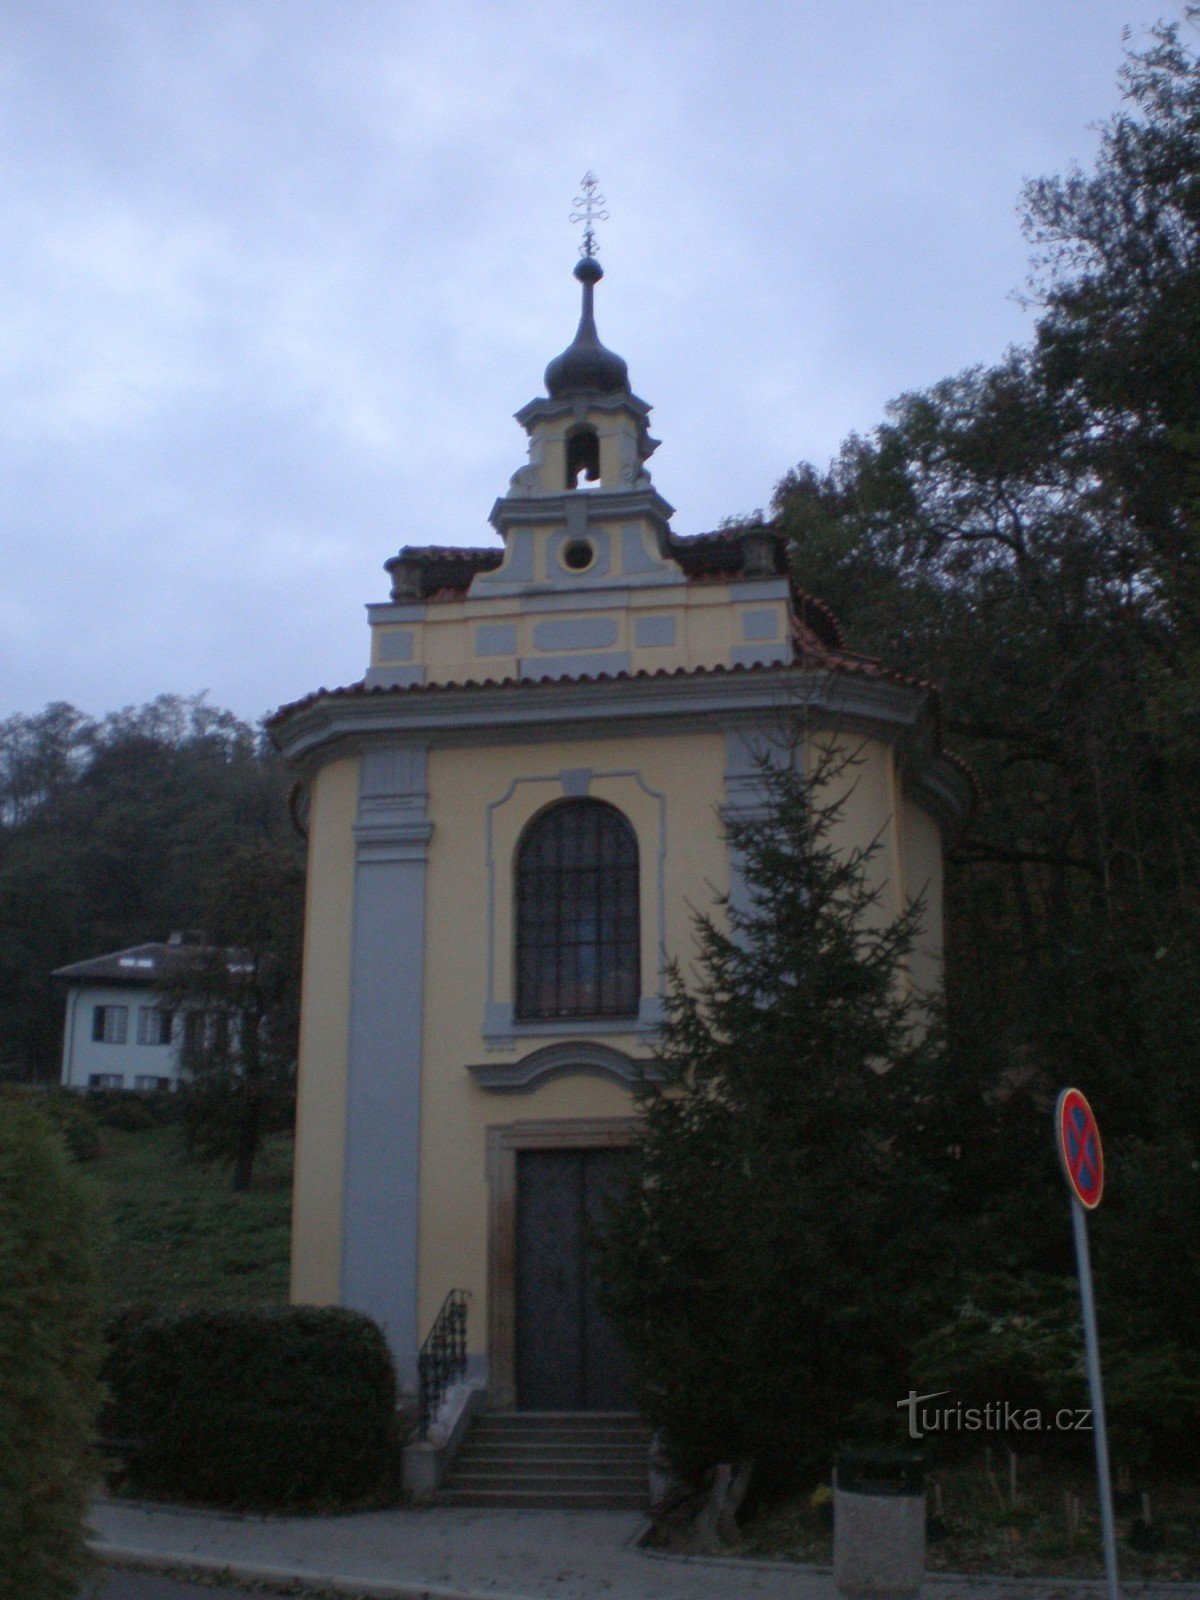 Sedlec - capela de S. Trindade